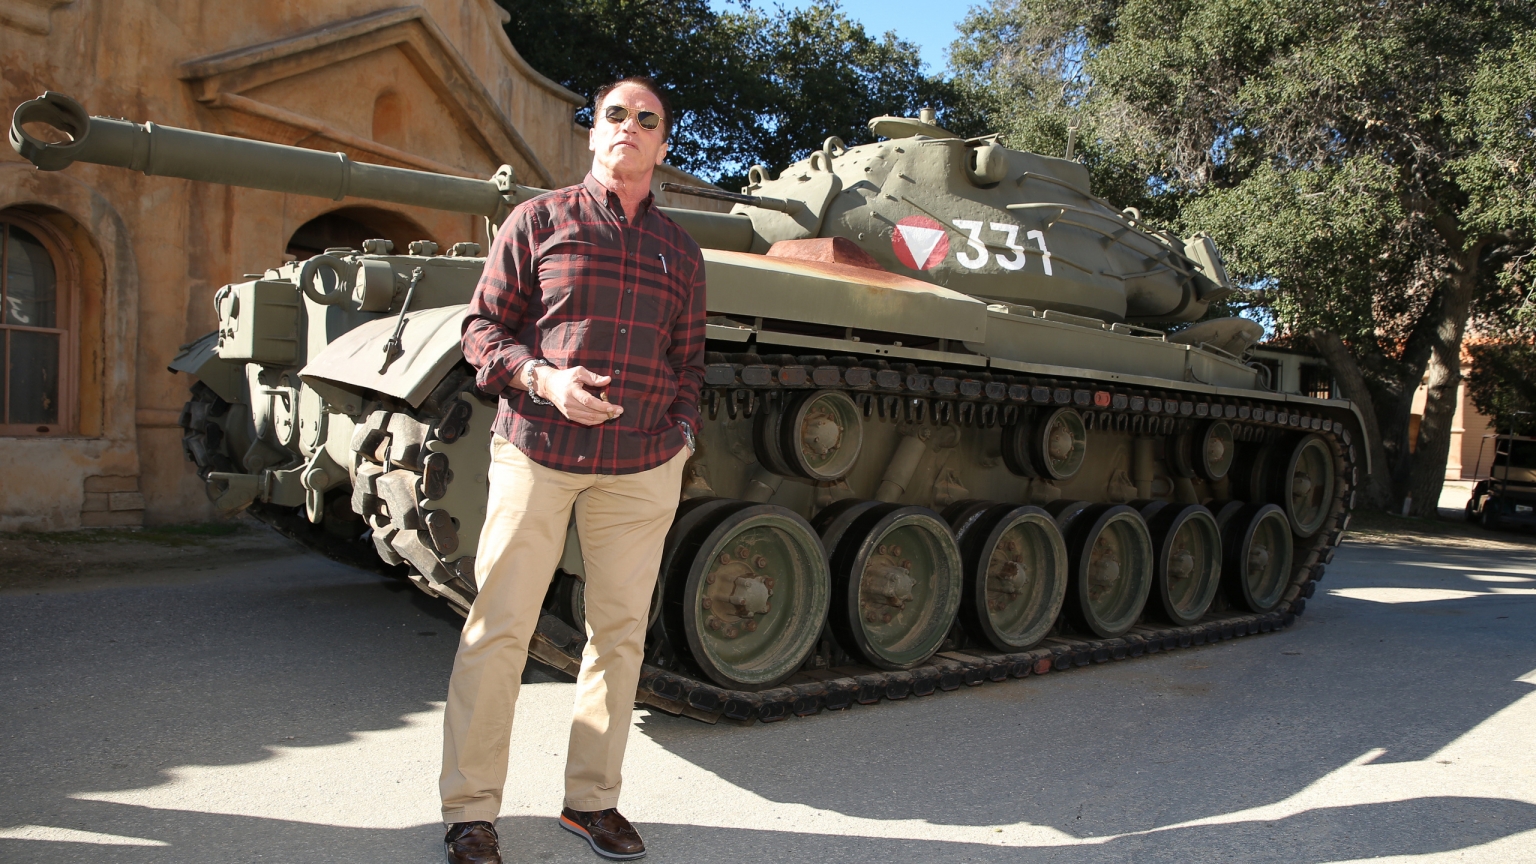 Arnold Schwarzenegger Tank for 1536 x 864 HDTV resolution